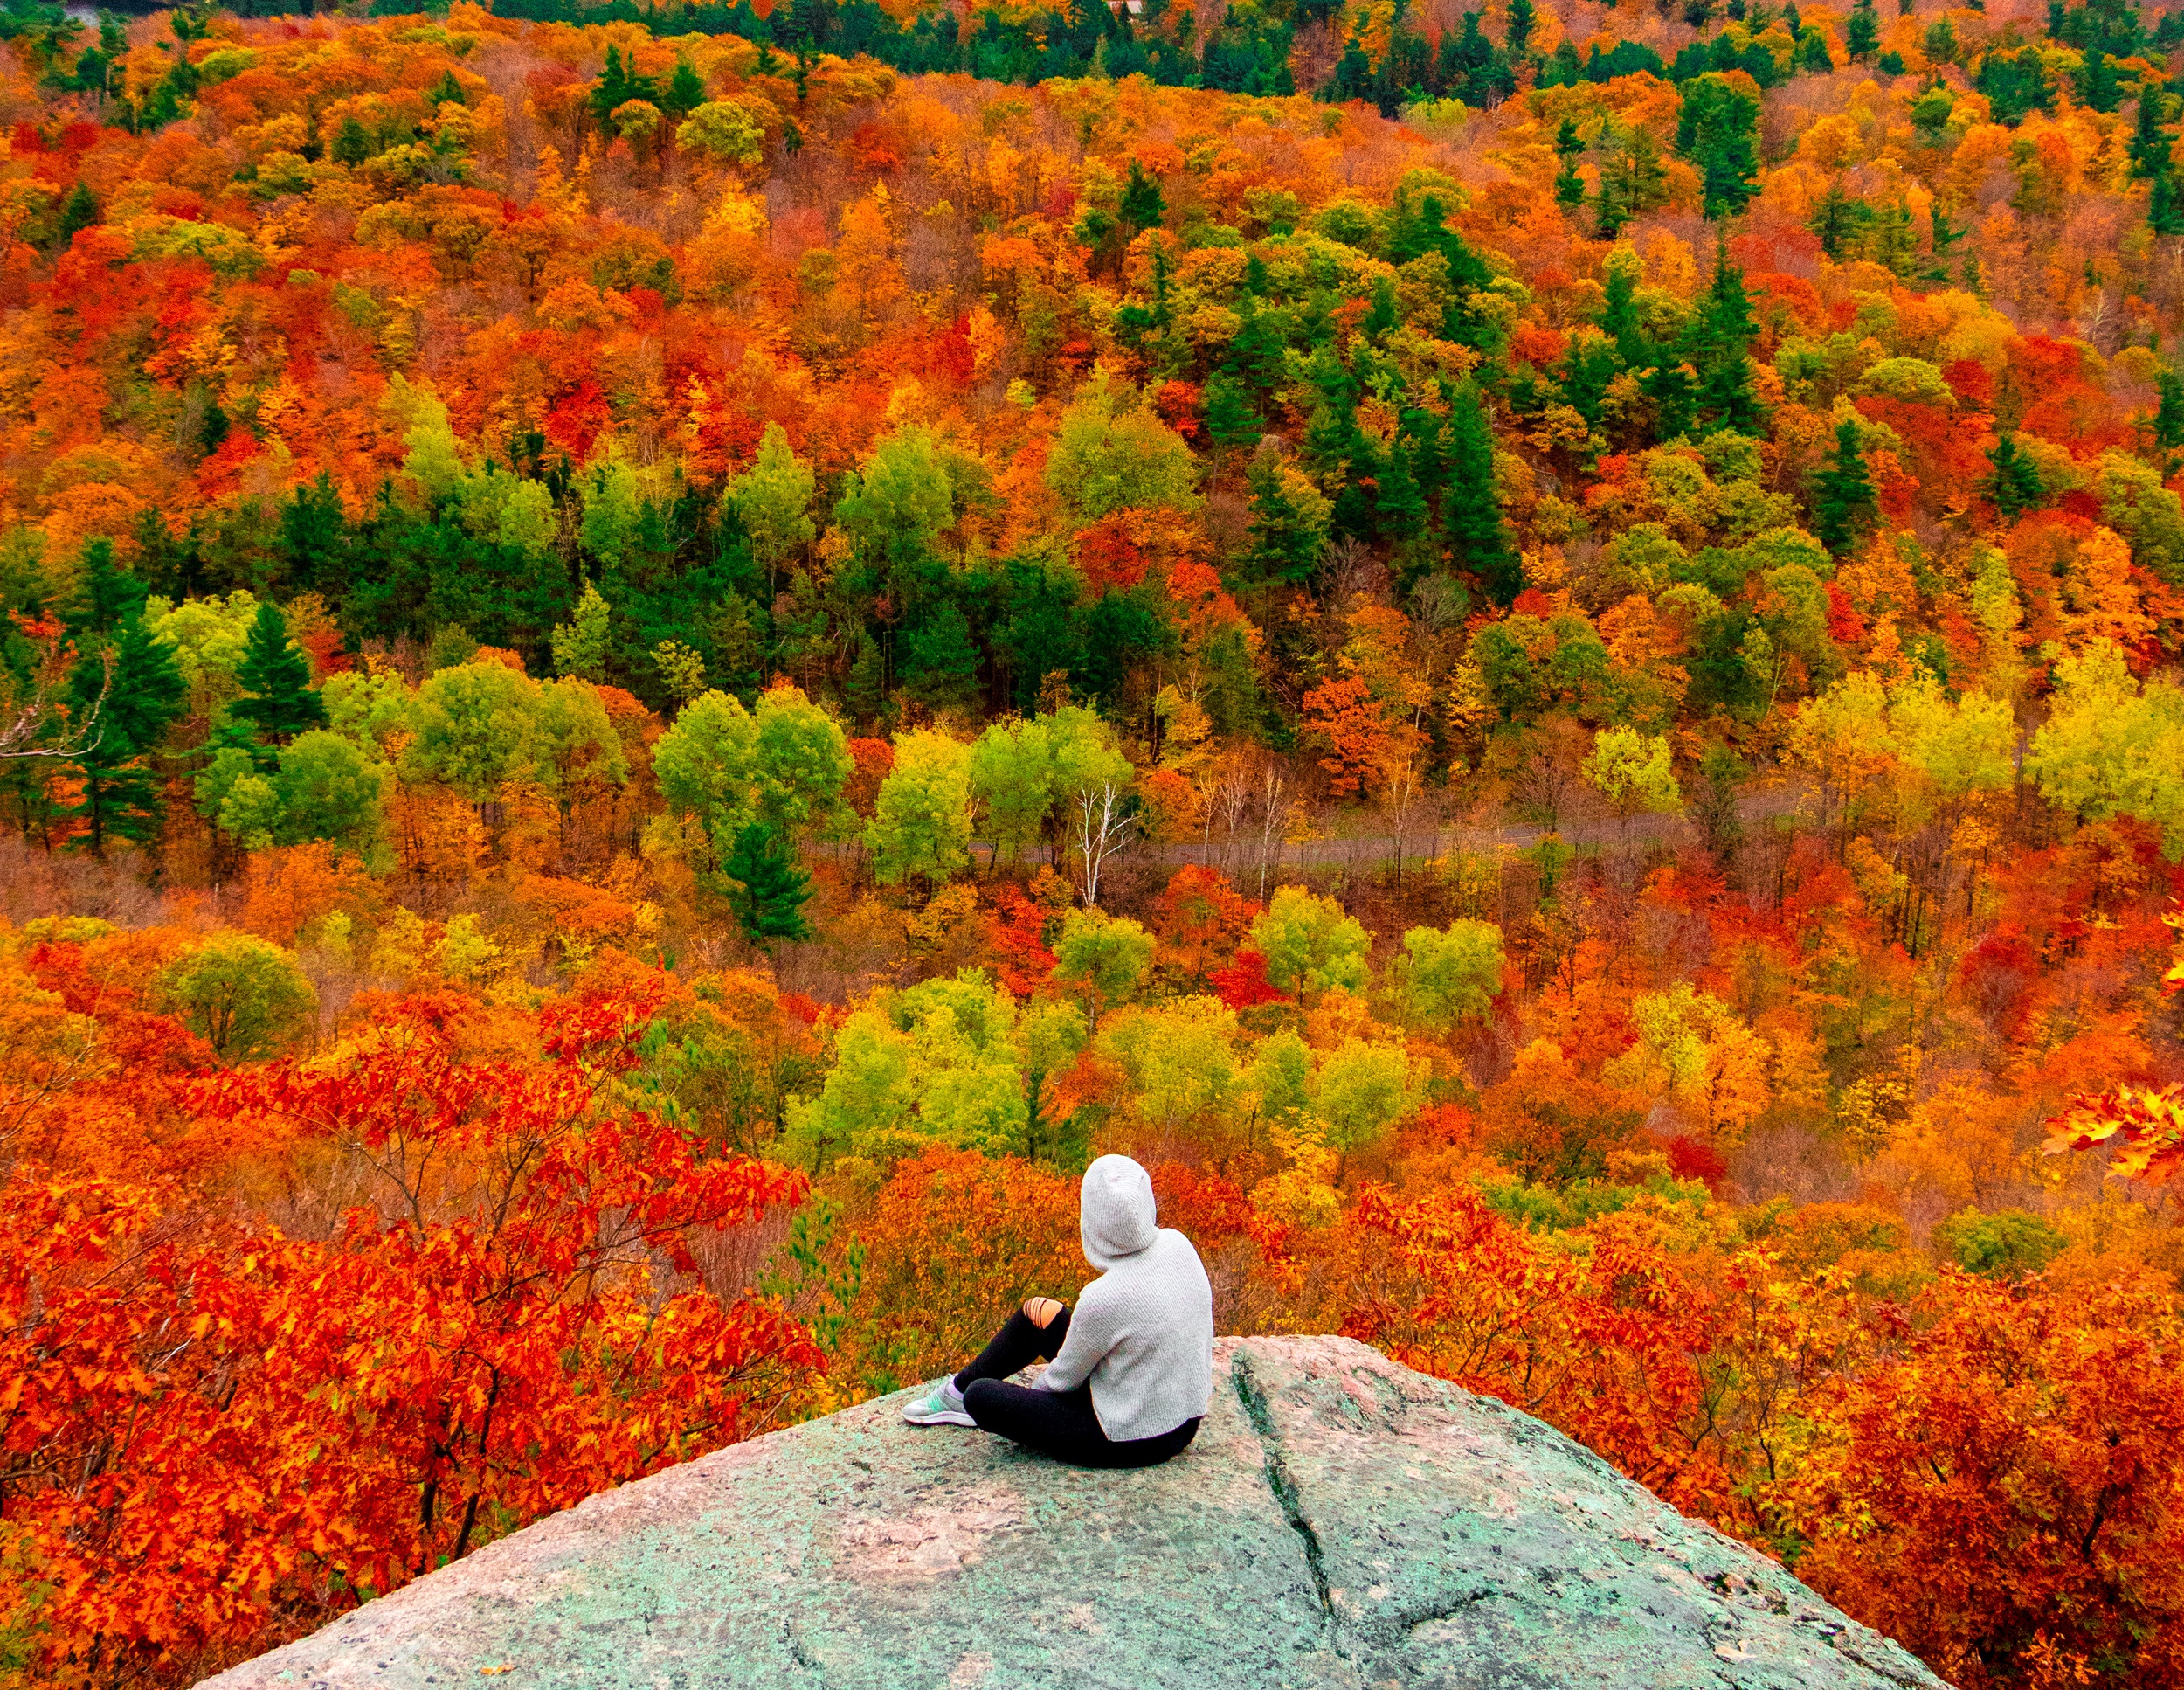 Les couleurs d'automne sont impressionnantes dans la forêt du parc de la Gatineau au Québec. © Salman, Adobe Stock